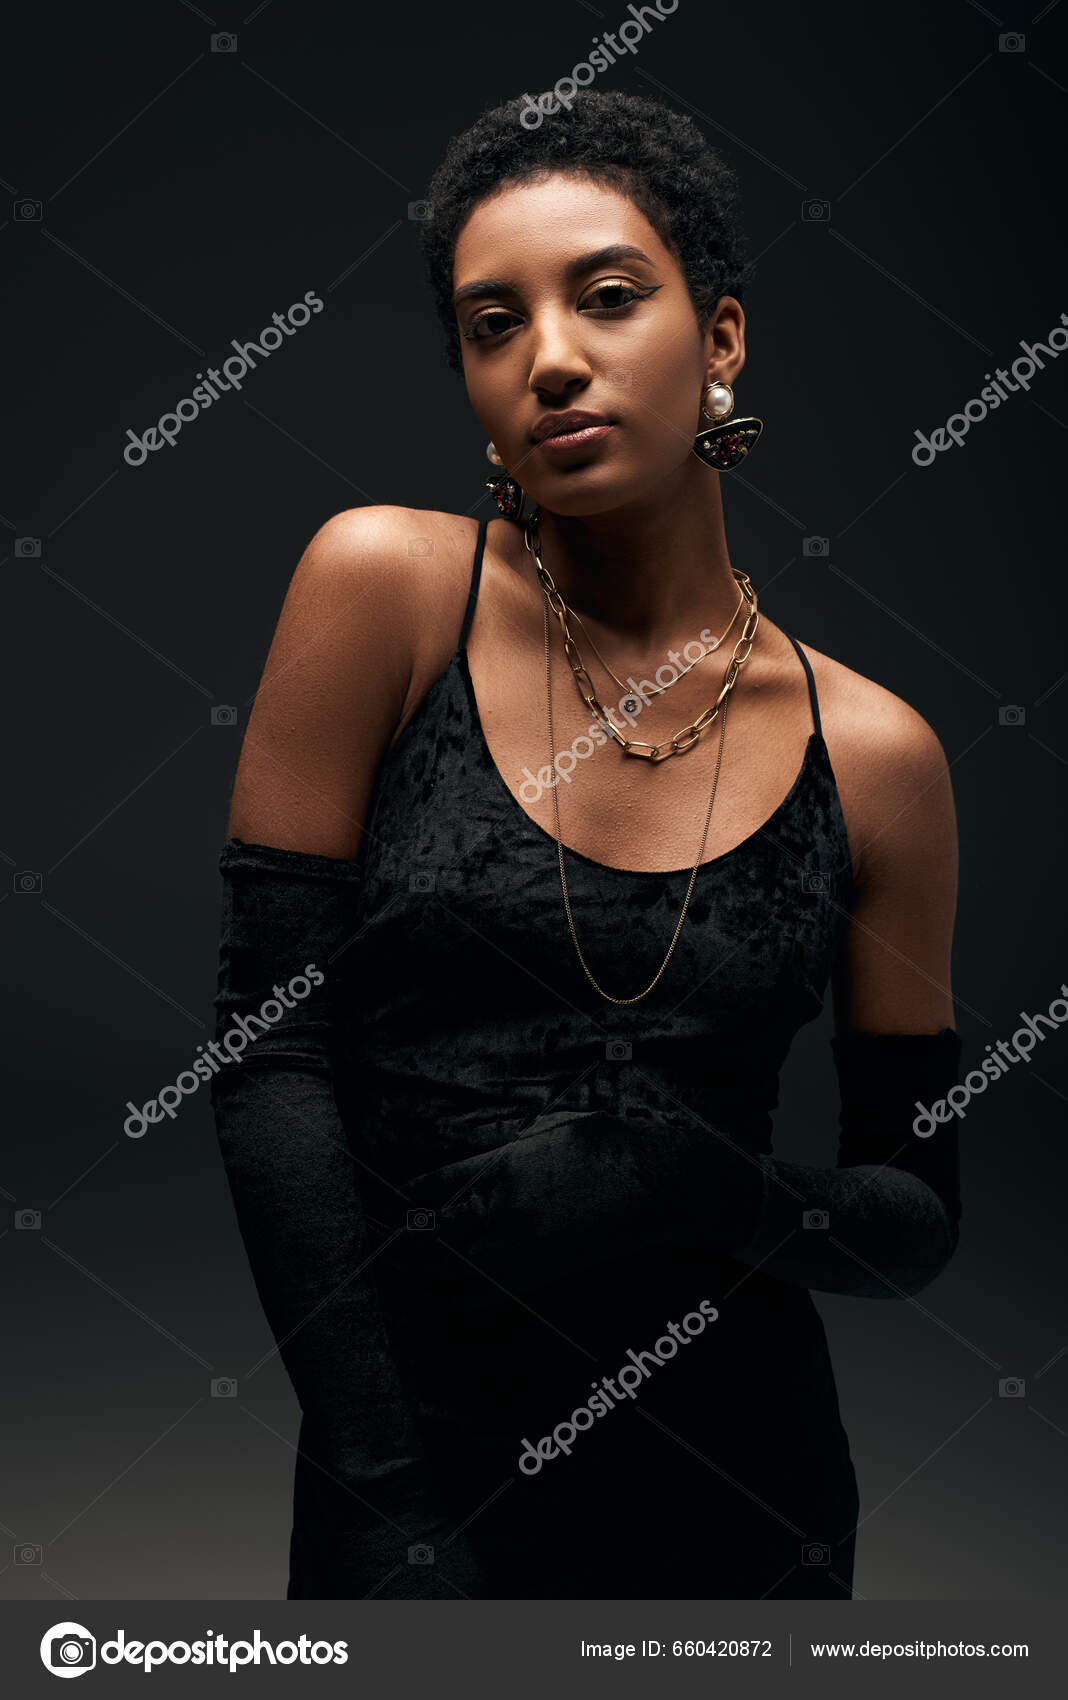 Black Strapless Formal Gown | Black dress formal, Black dress accessories,  Accessorize black dress